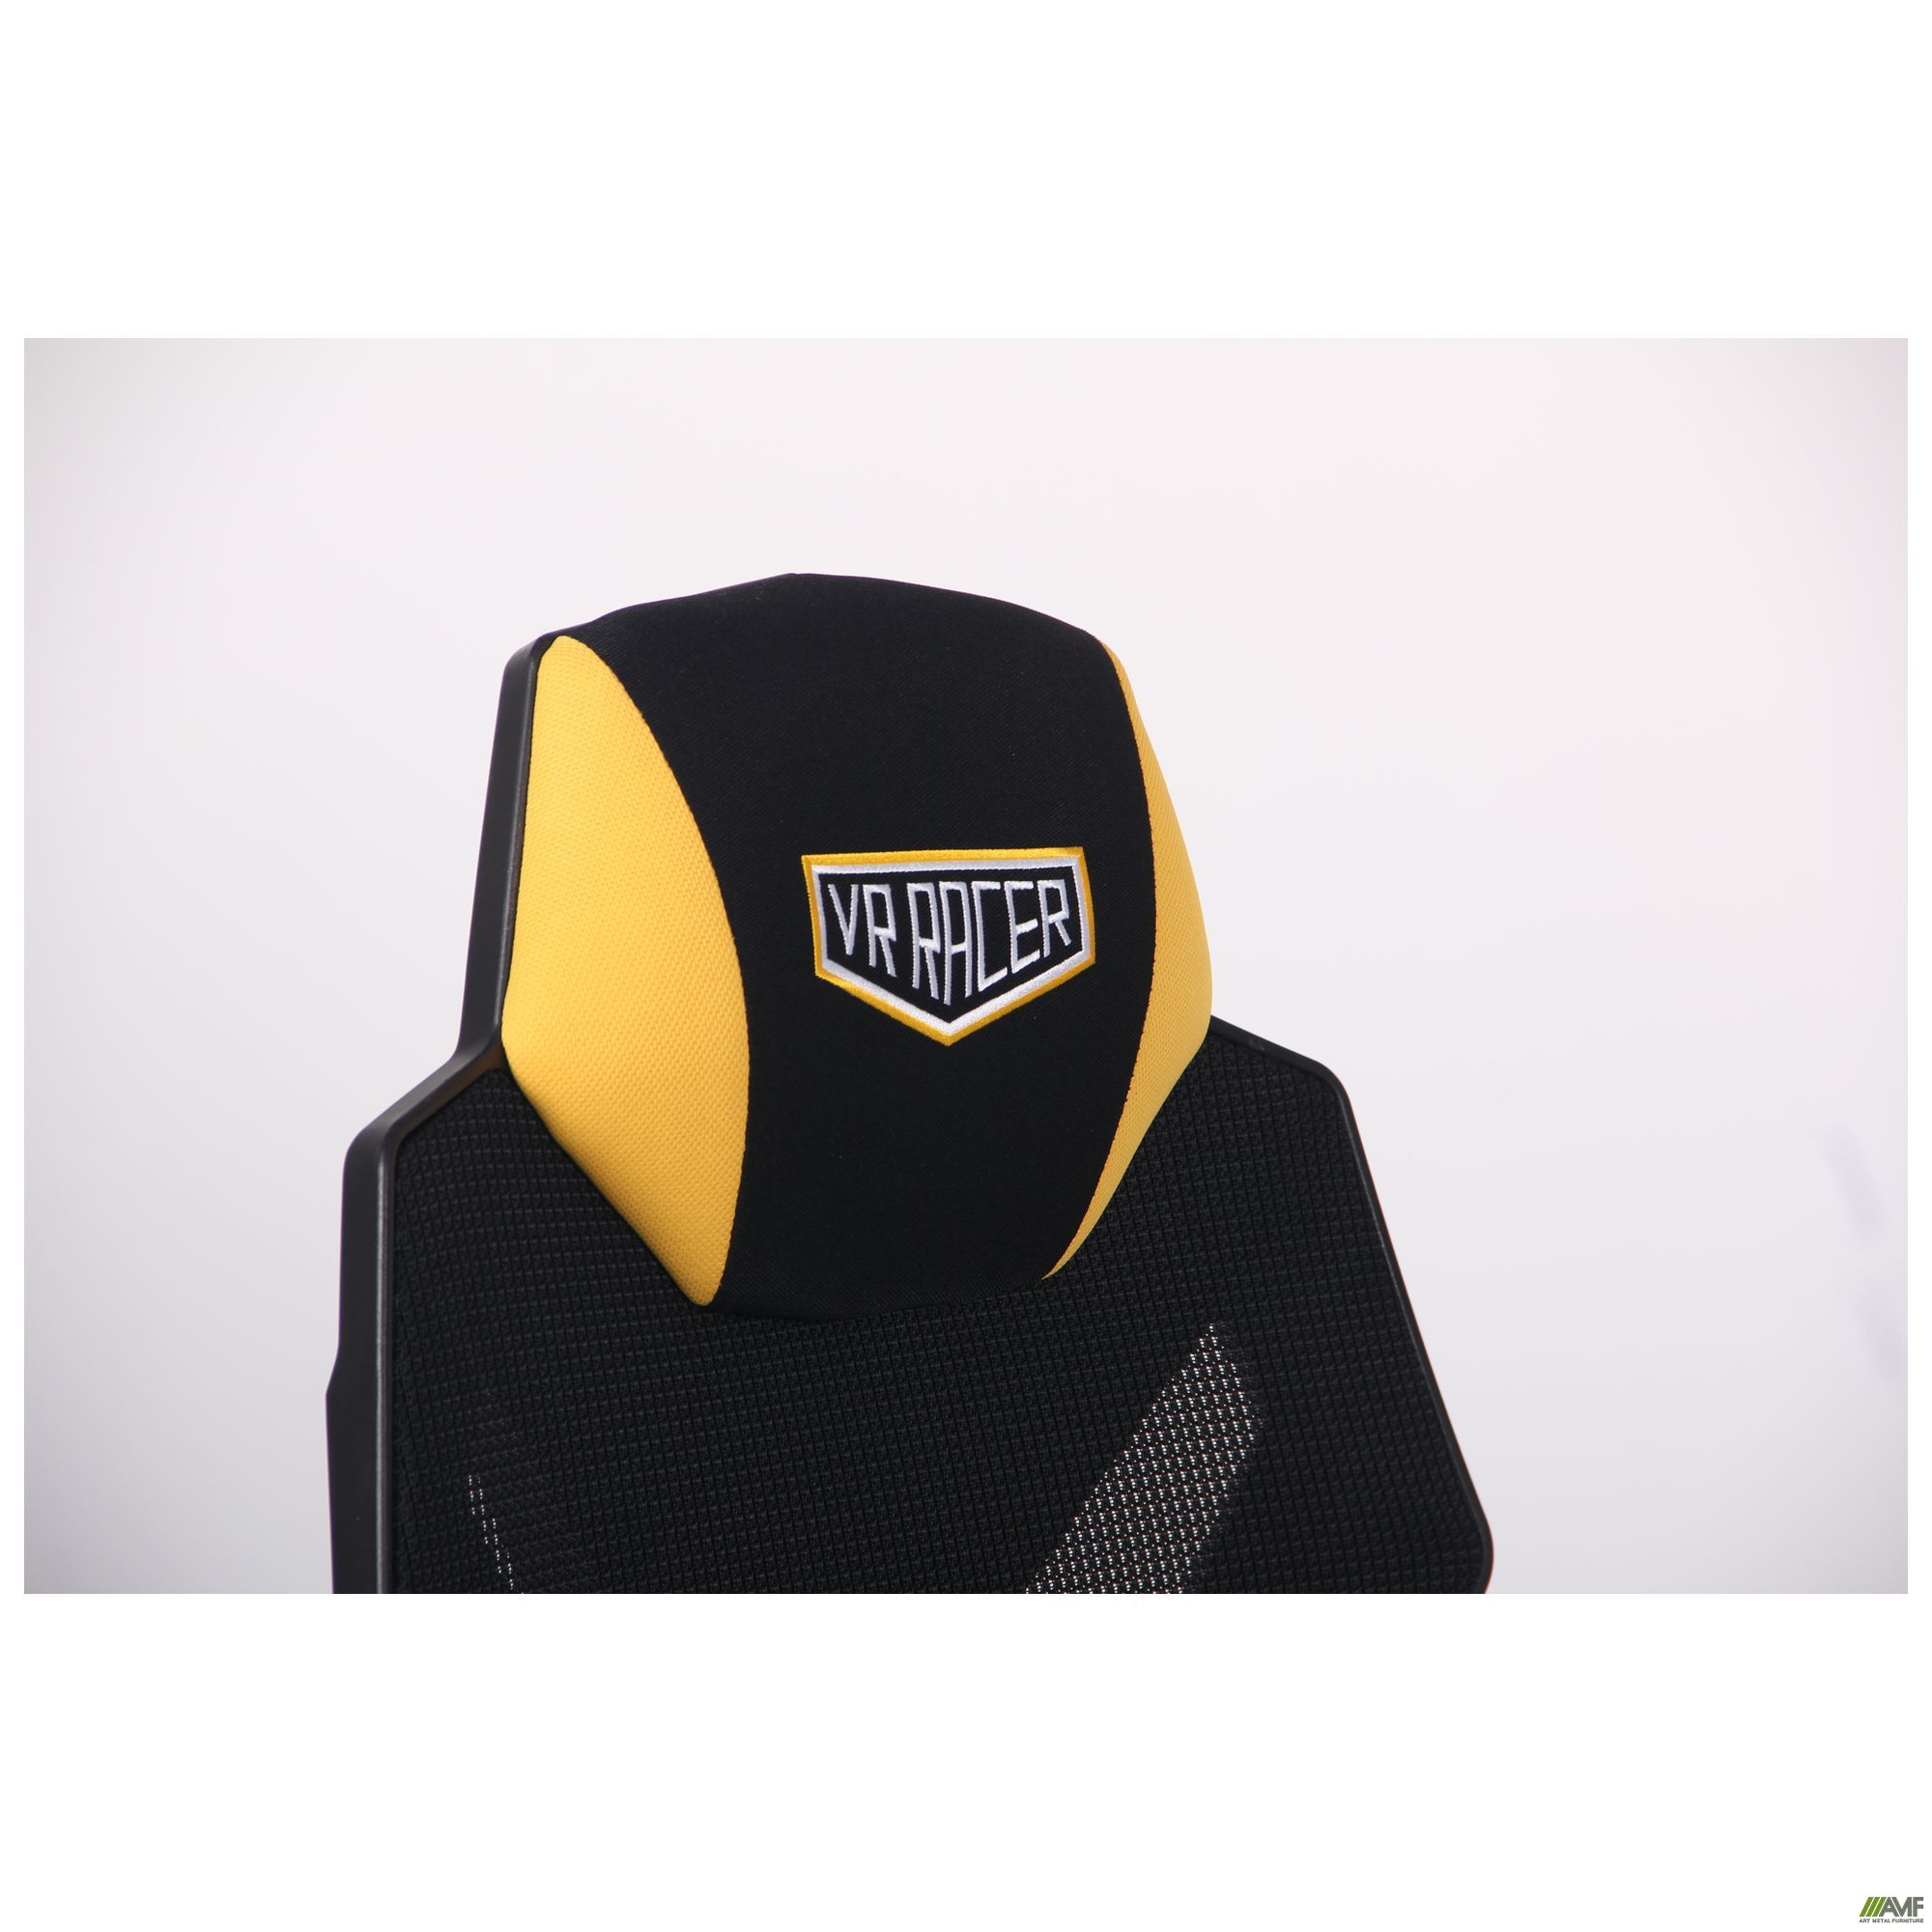 Фото 13 - Кресло VR Racer Radical Wrex черный/желтый 